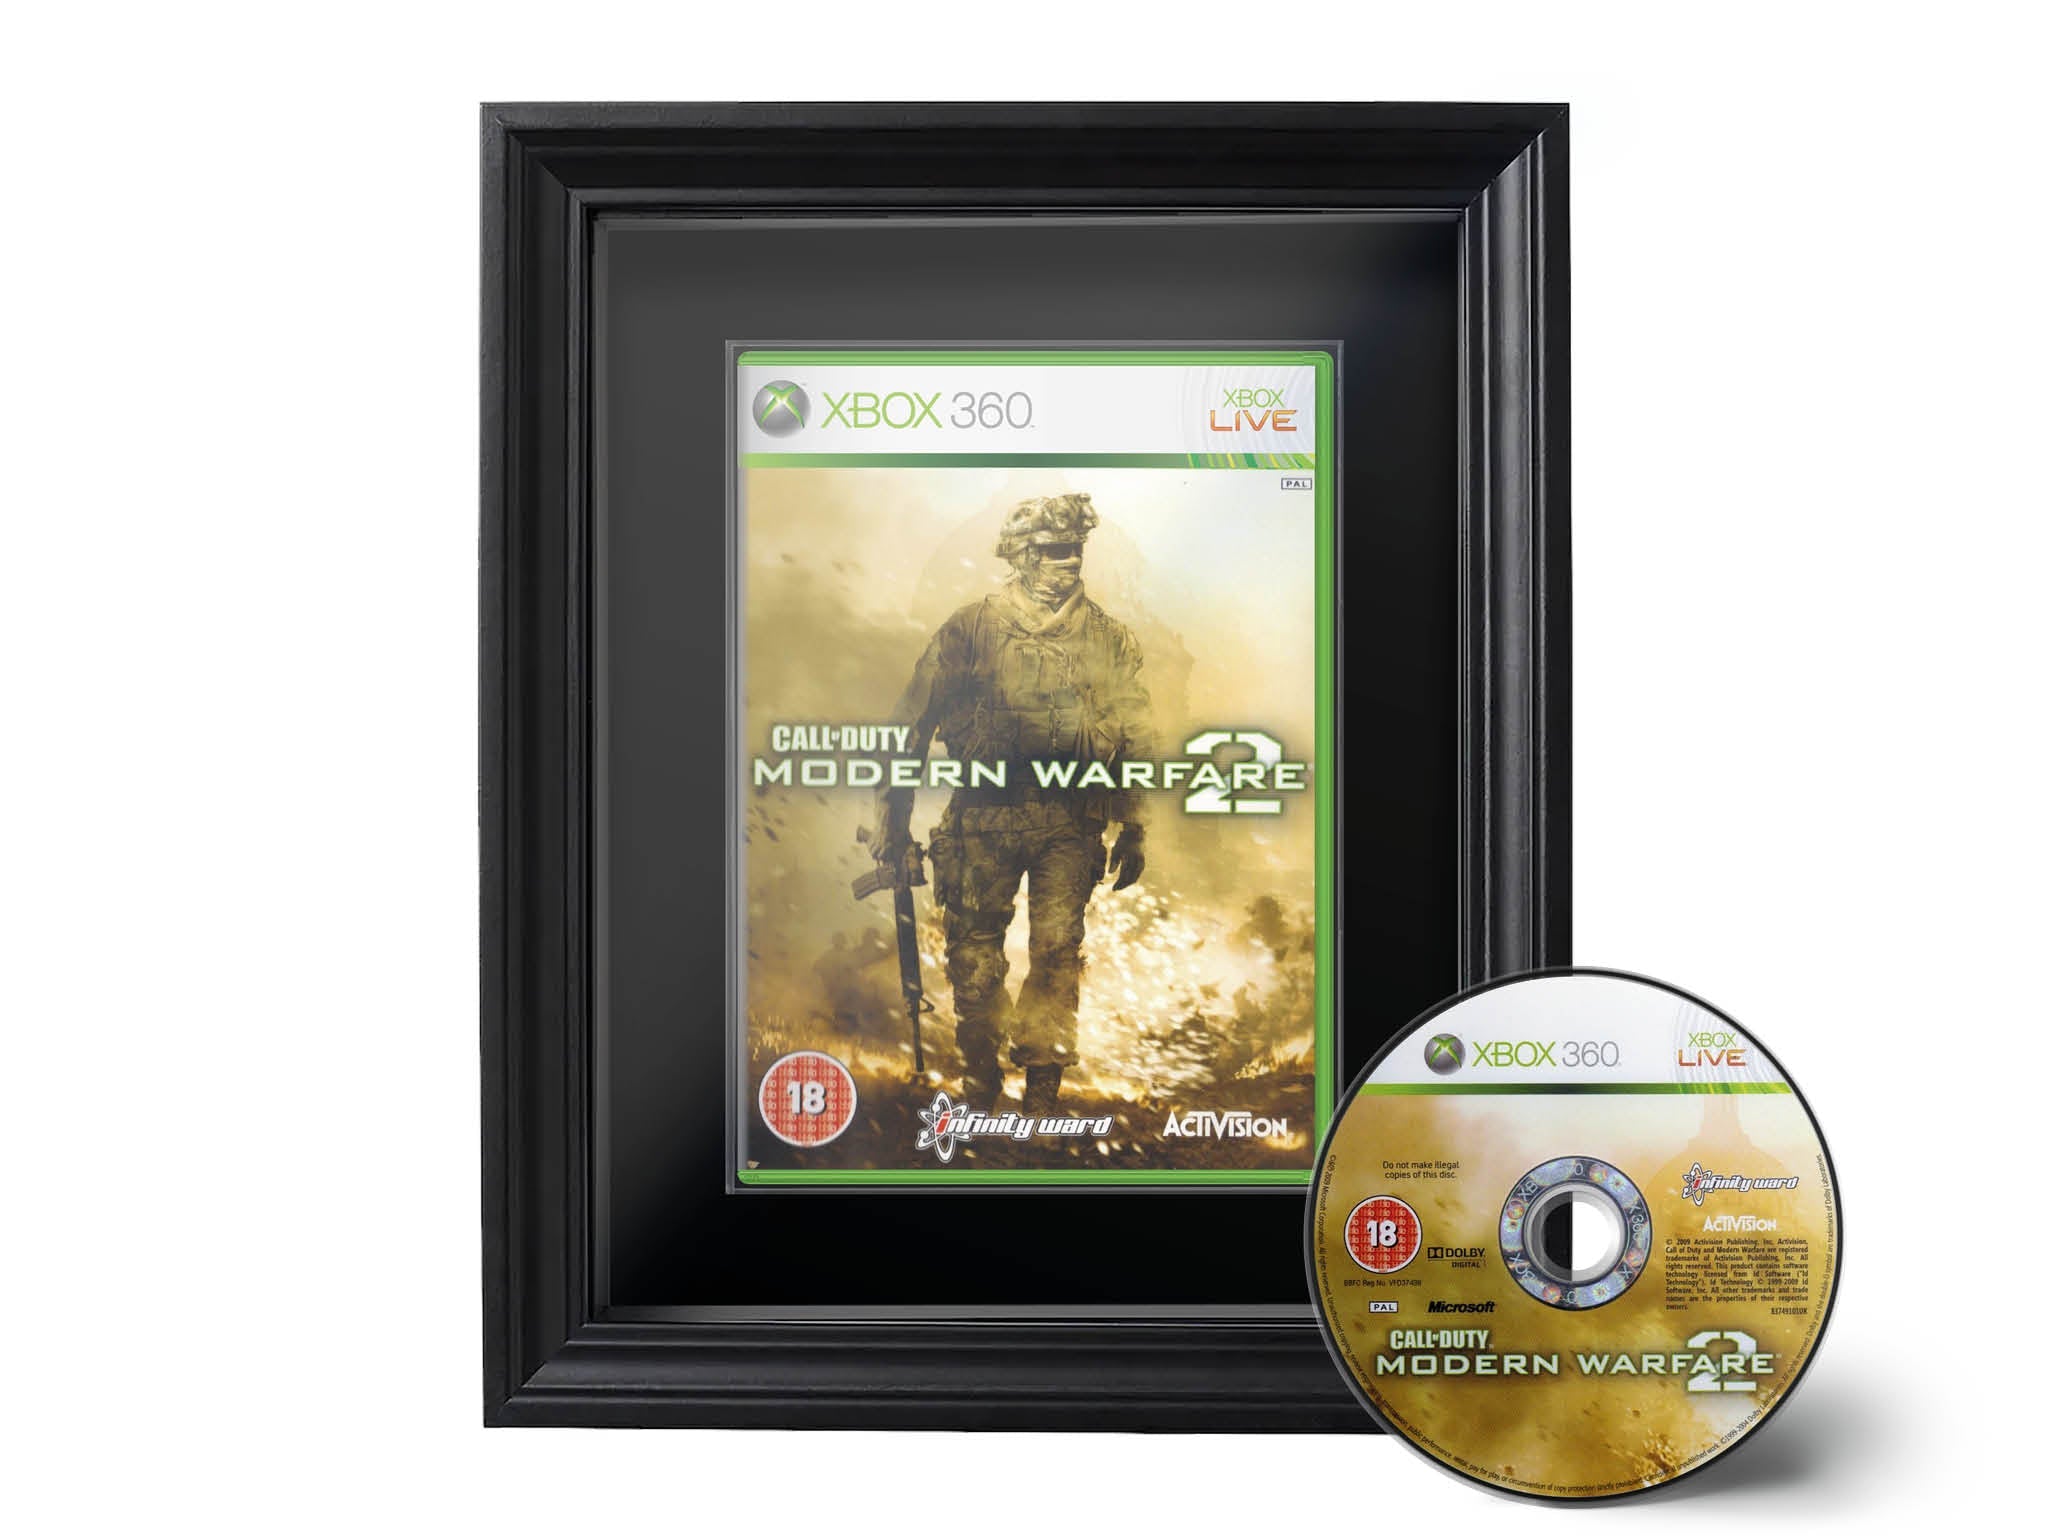 Call of Duty: Modern Warfare 2 (Xbox 360) Showcase Range Framed Game - Frame-A-Game